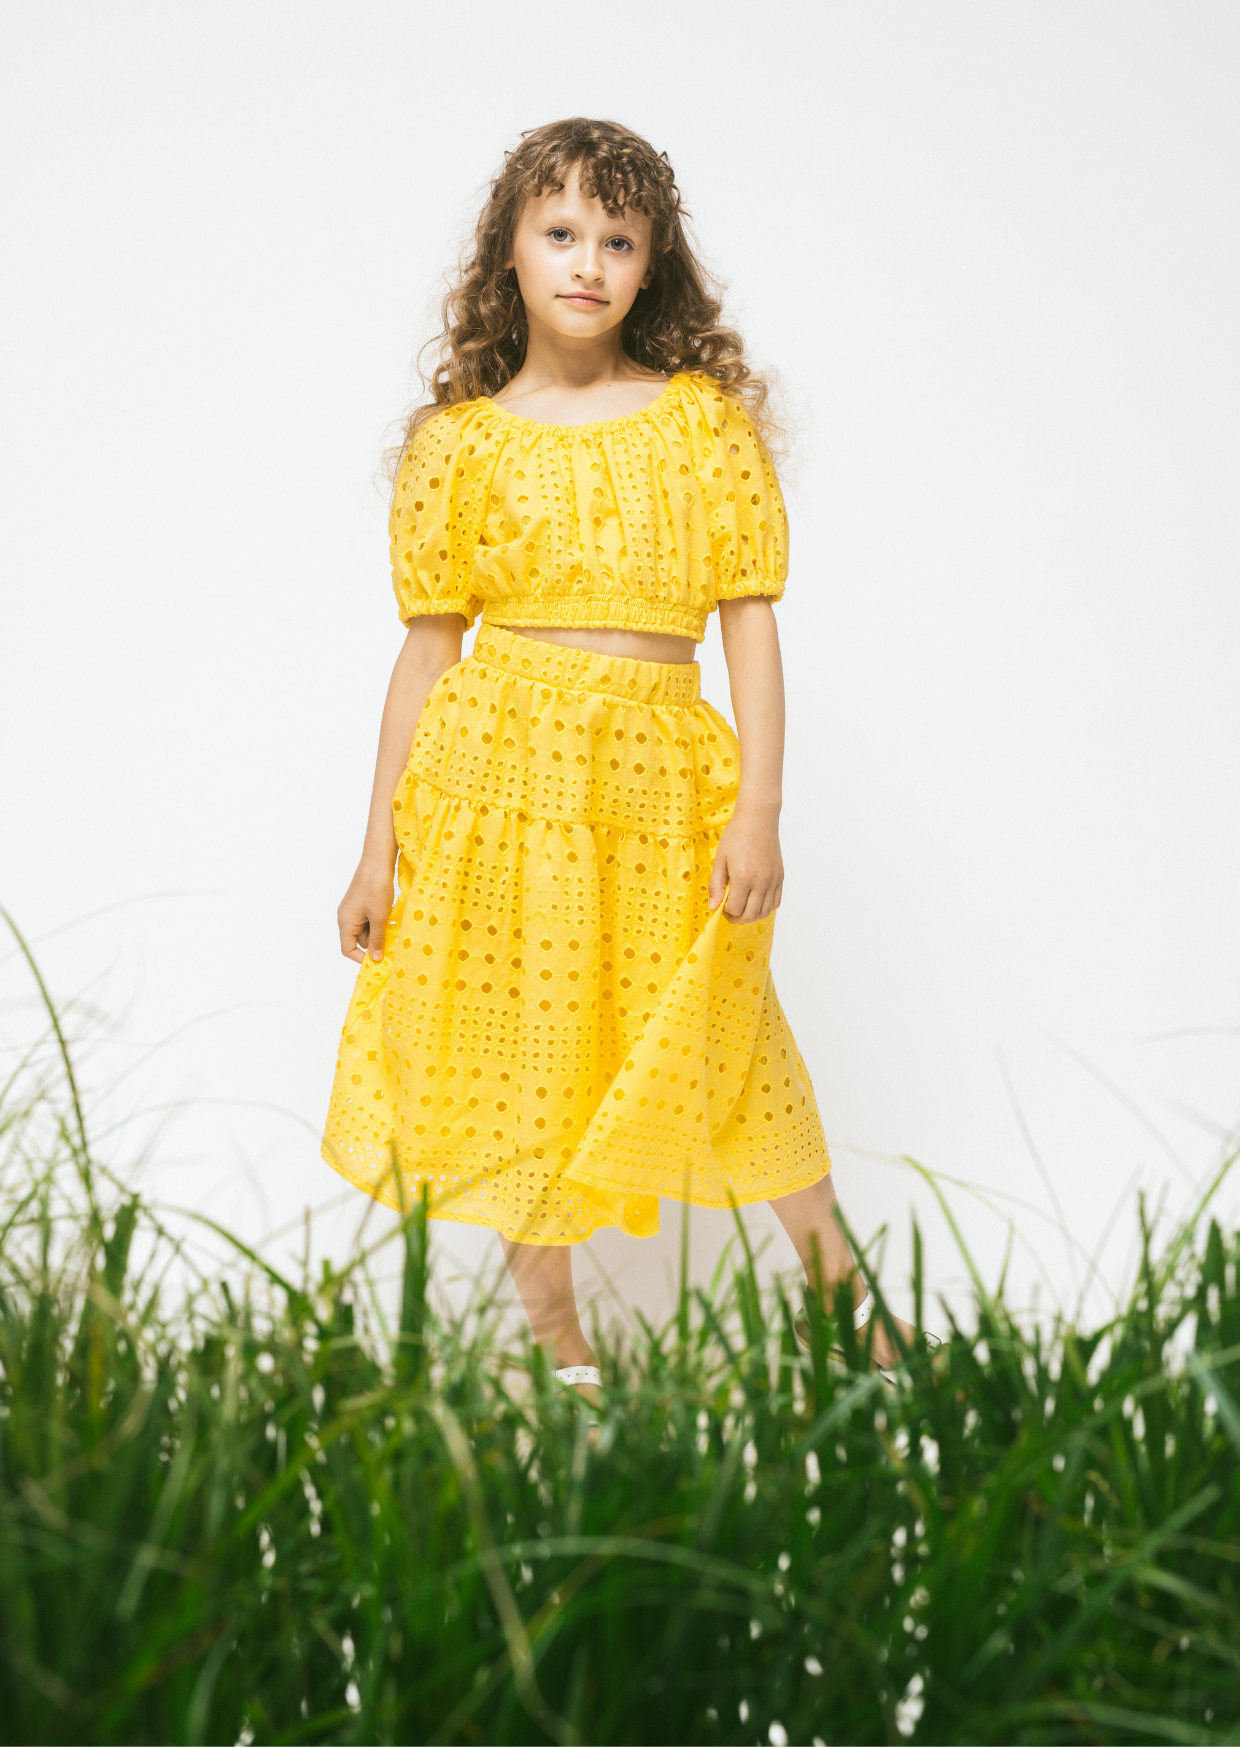 Cotton Skirt Delta, Yellow